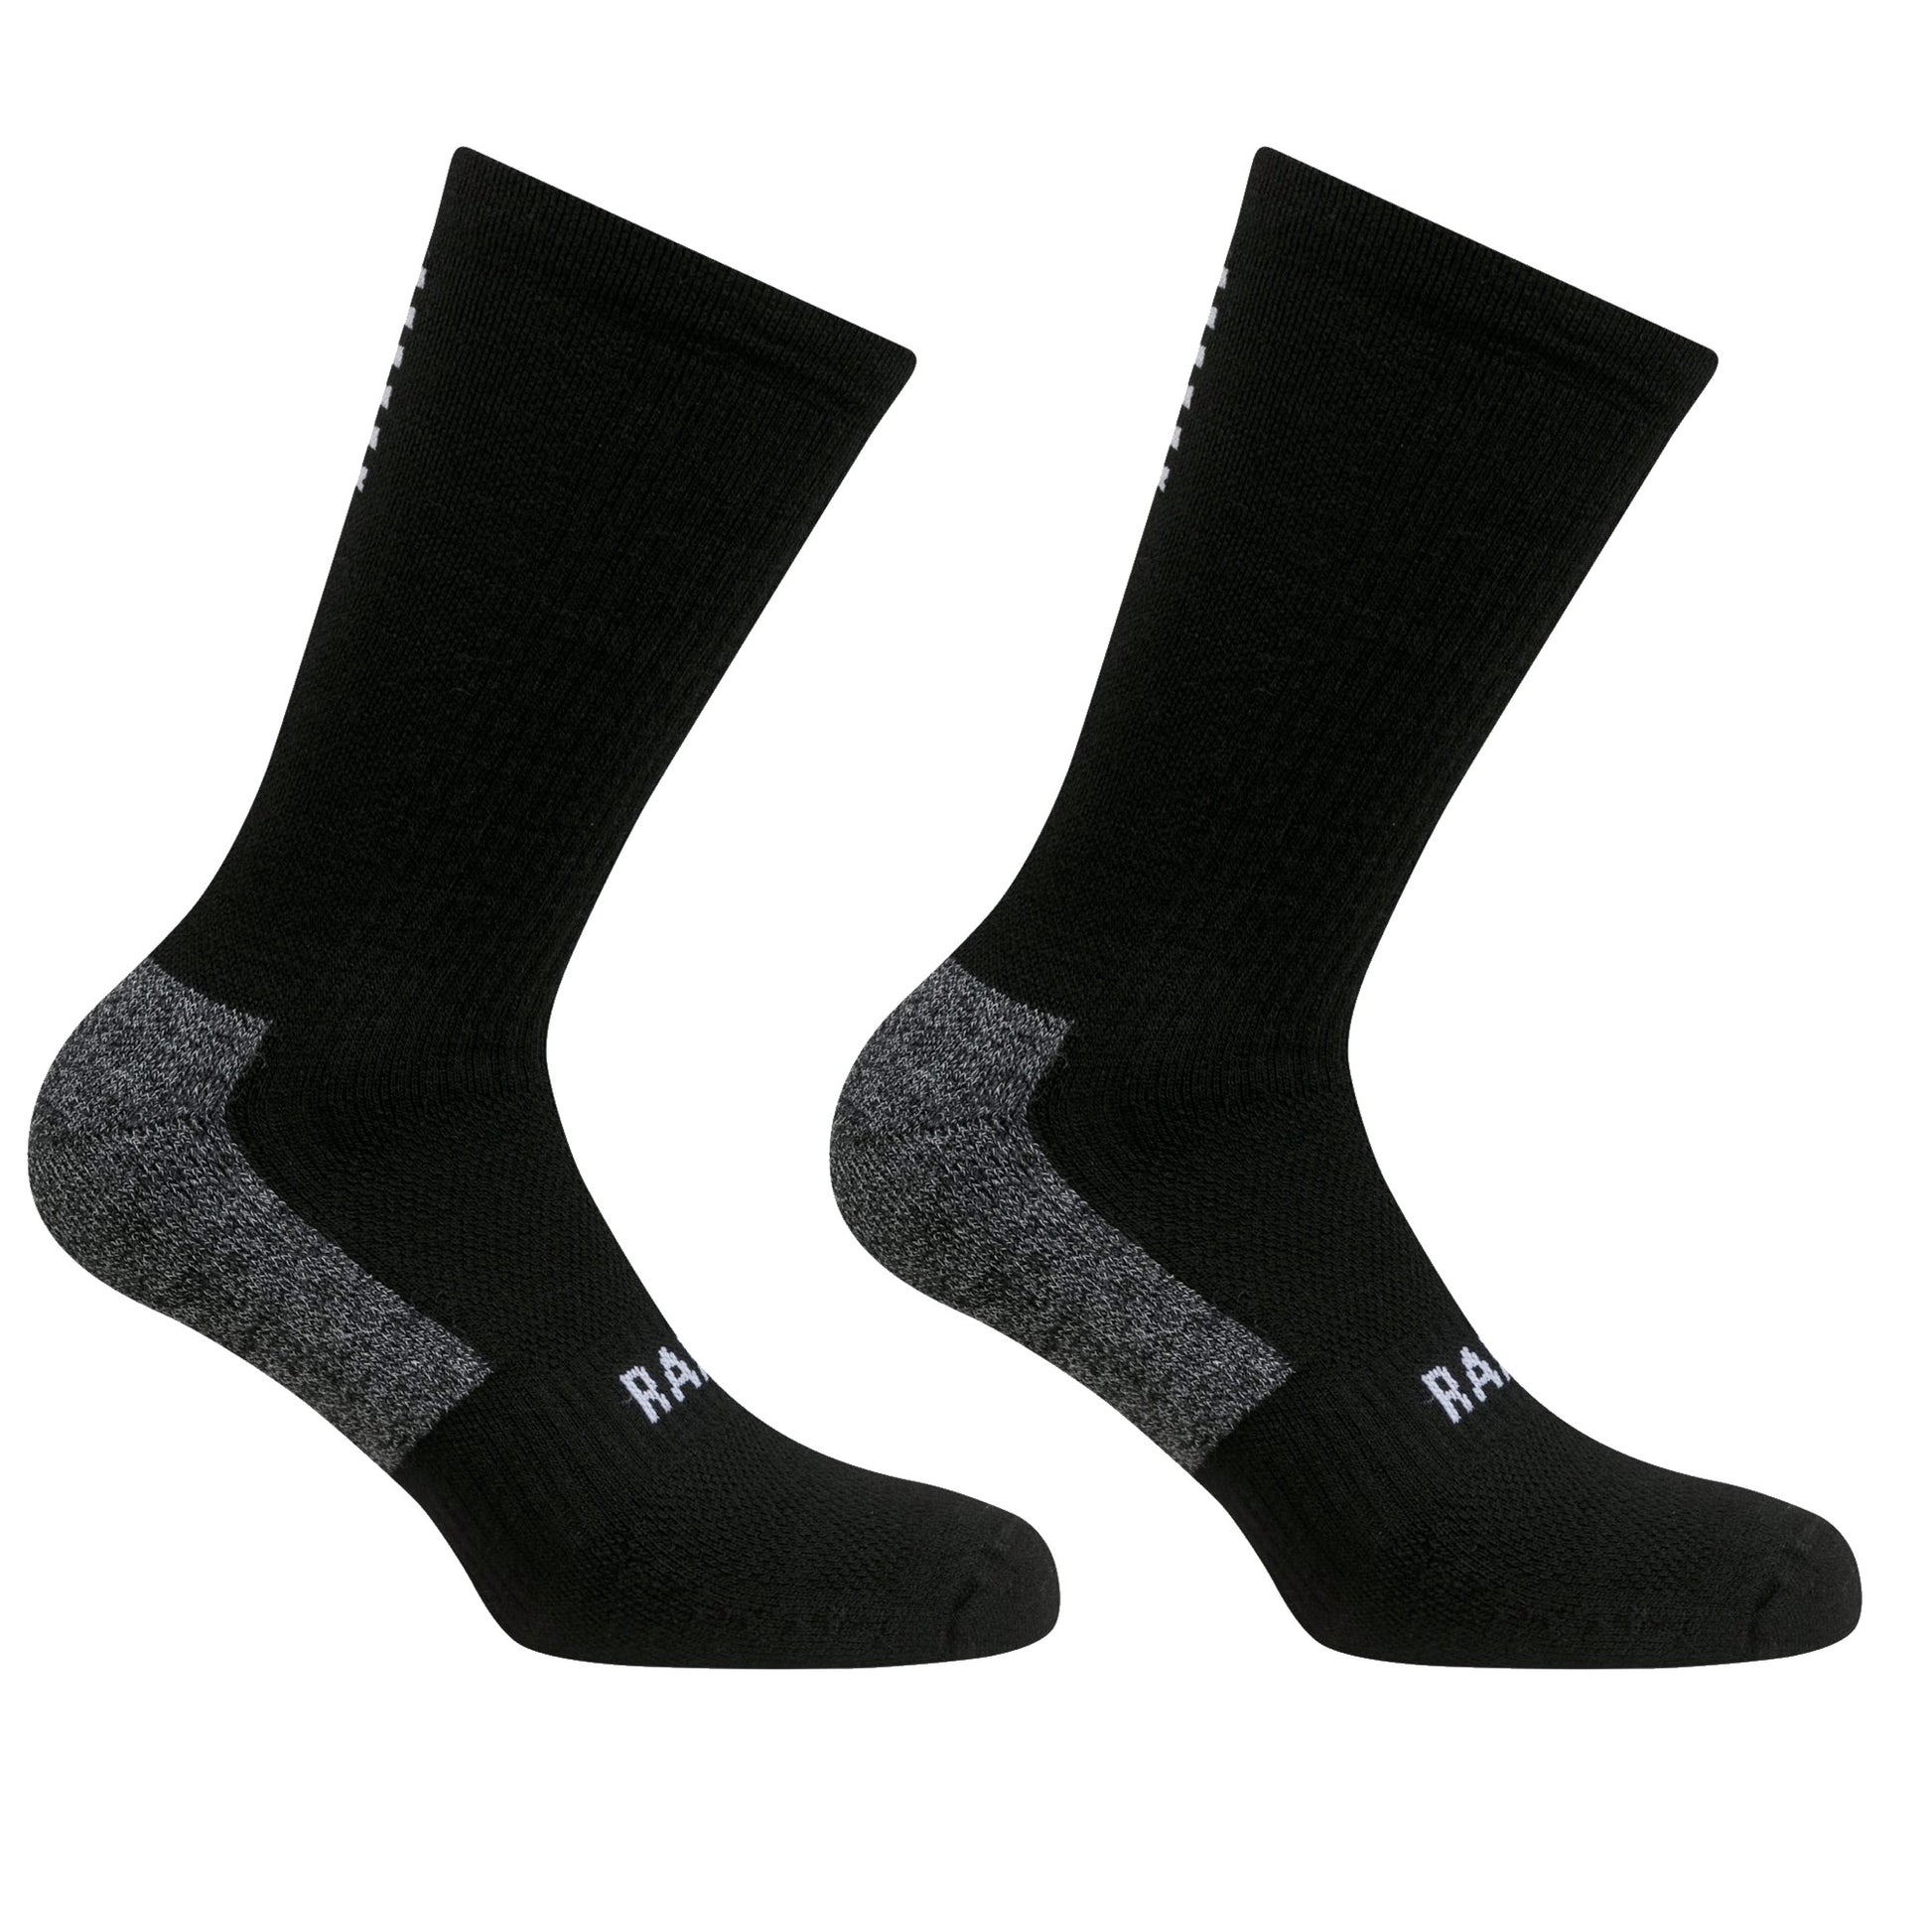 Rapha Pro Team Winter Socks, Black/White